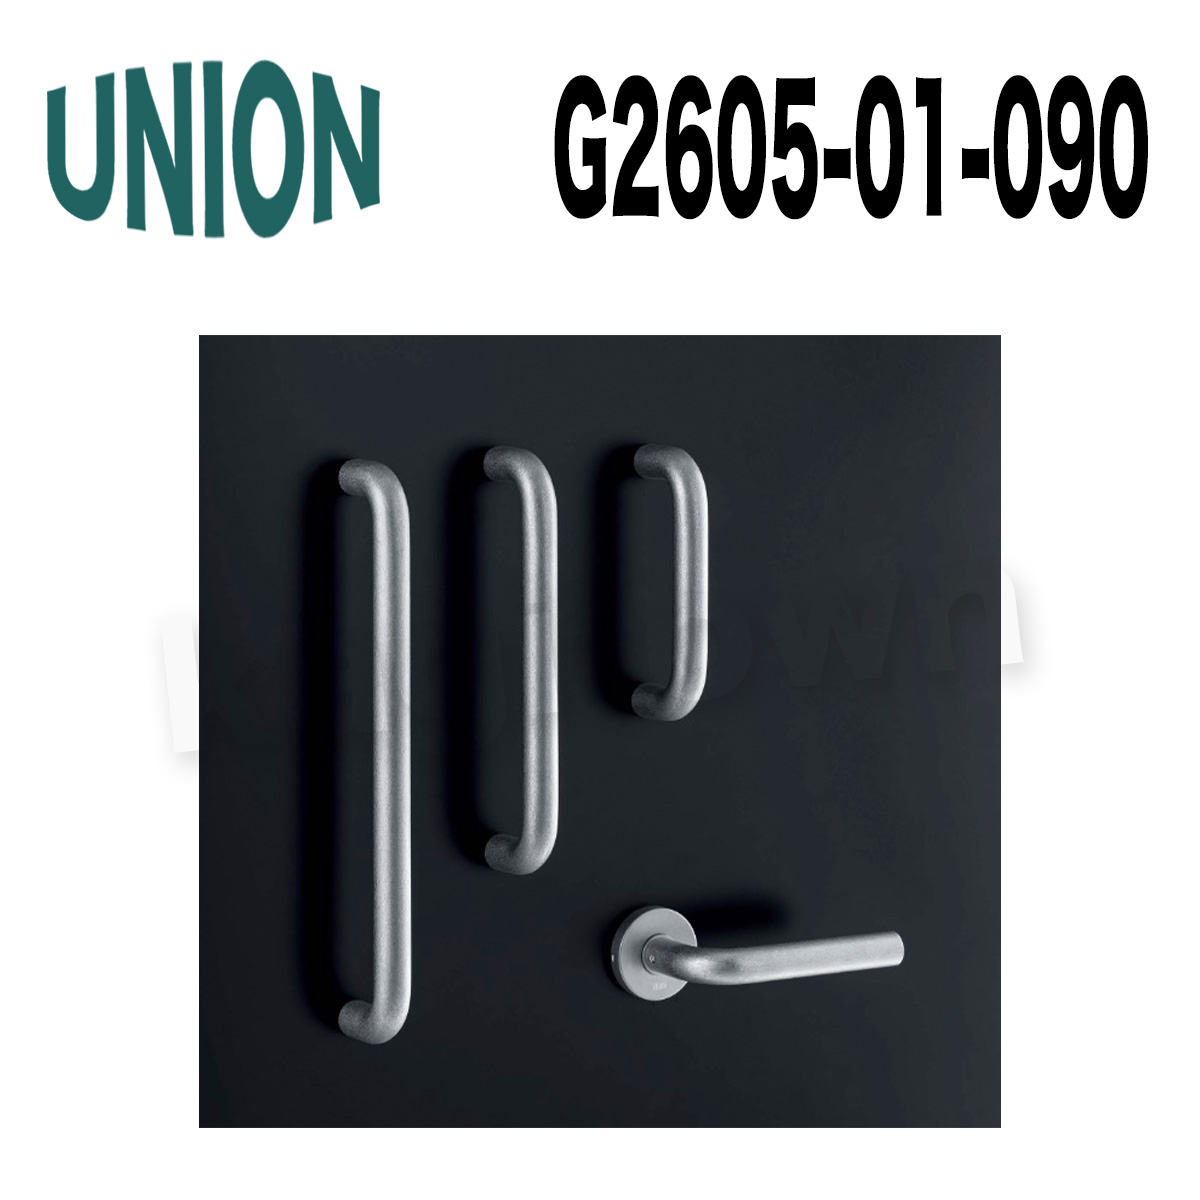 UNION【ユニオン】G2605-01-001-L150[ドアハンドル]押し棒 1セット